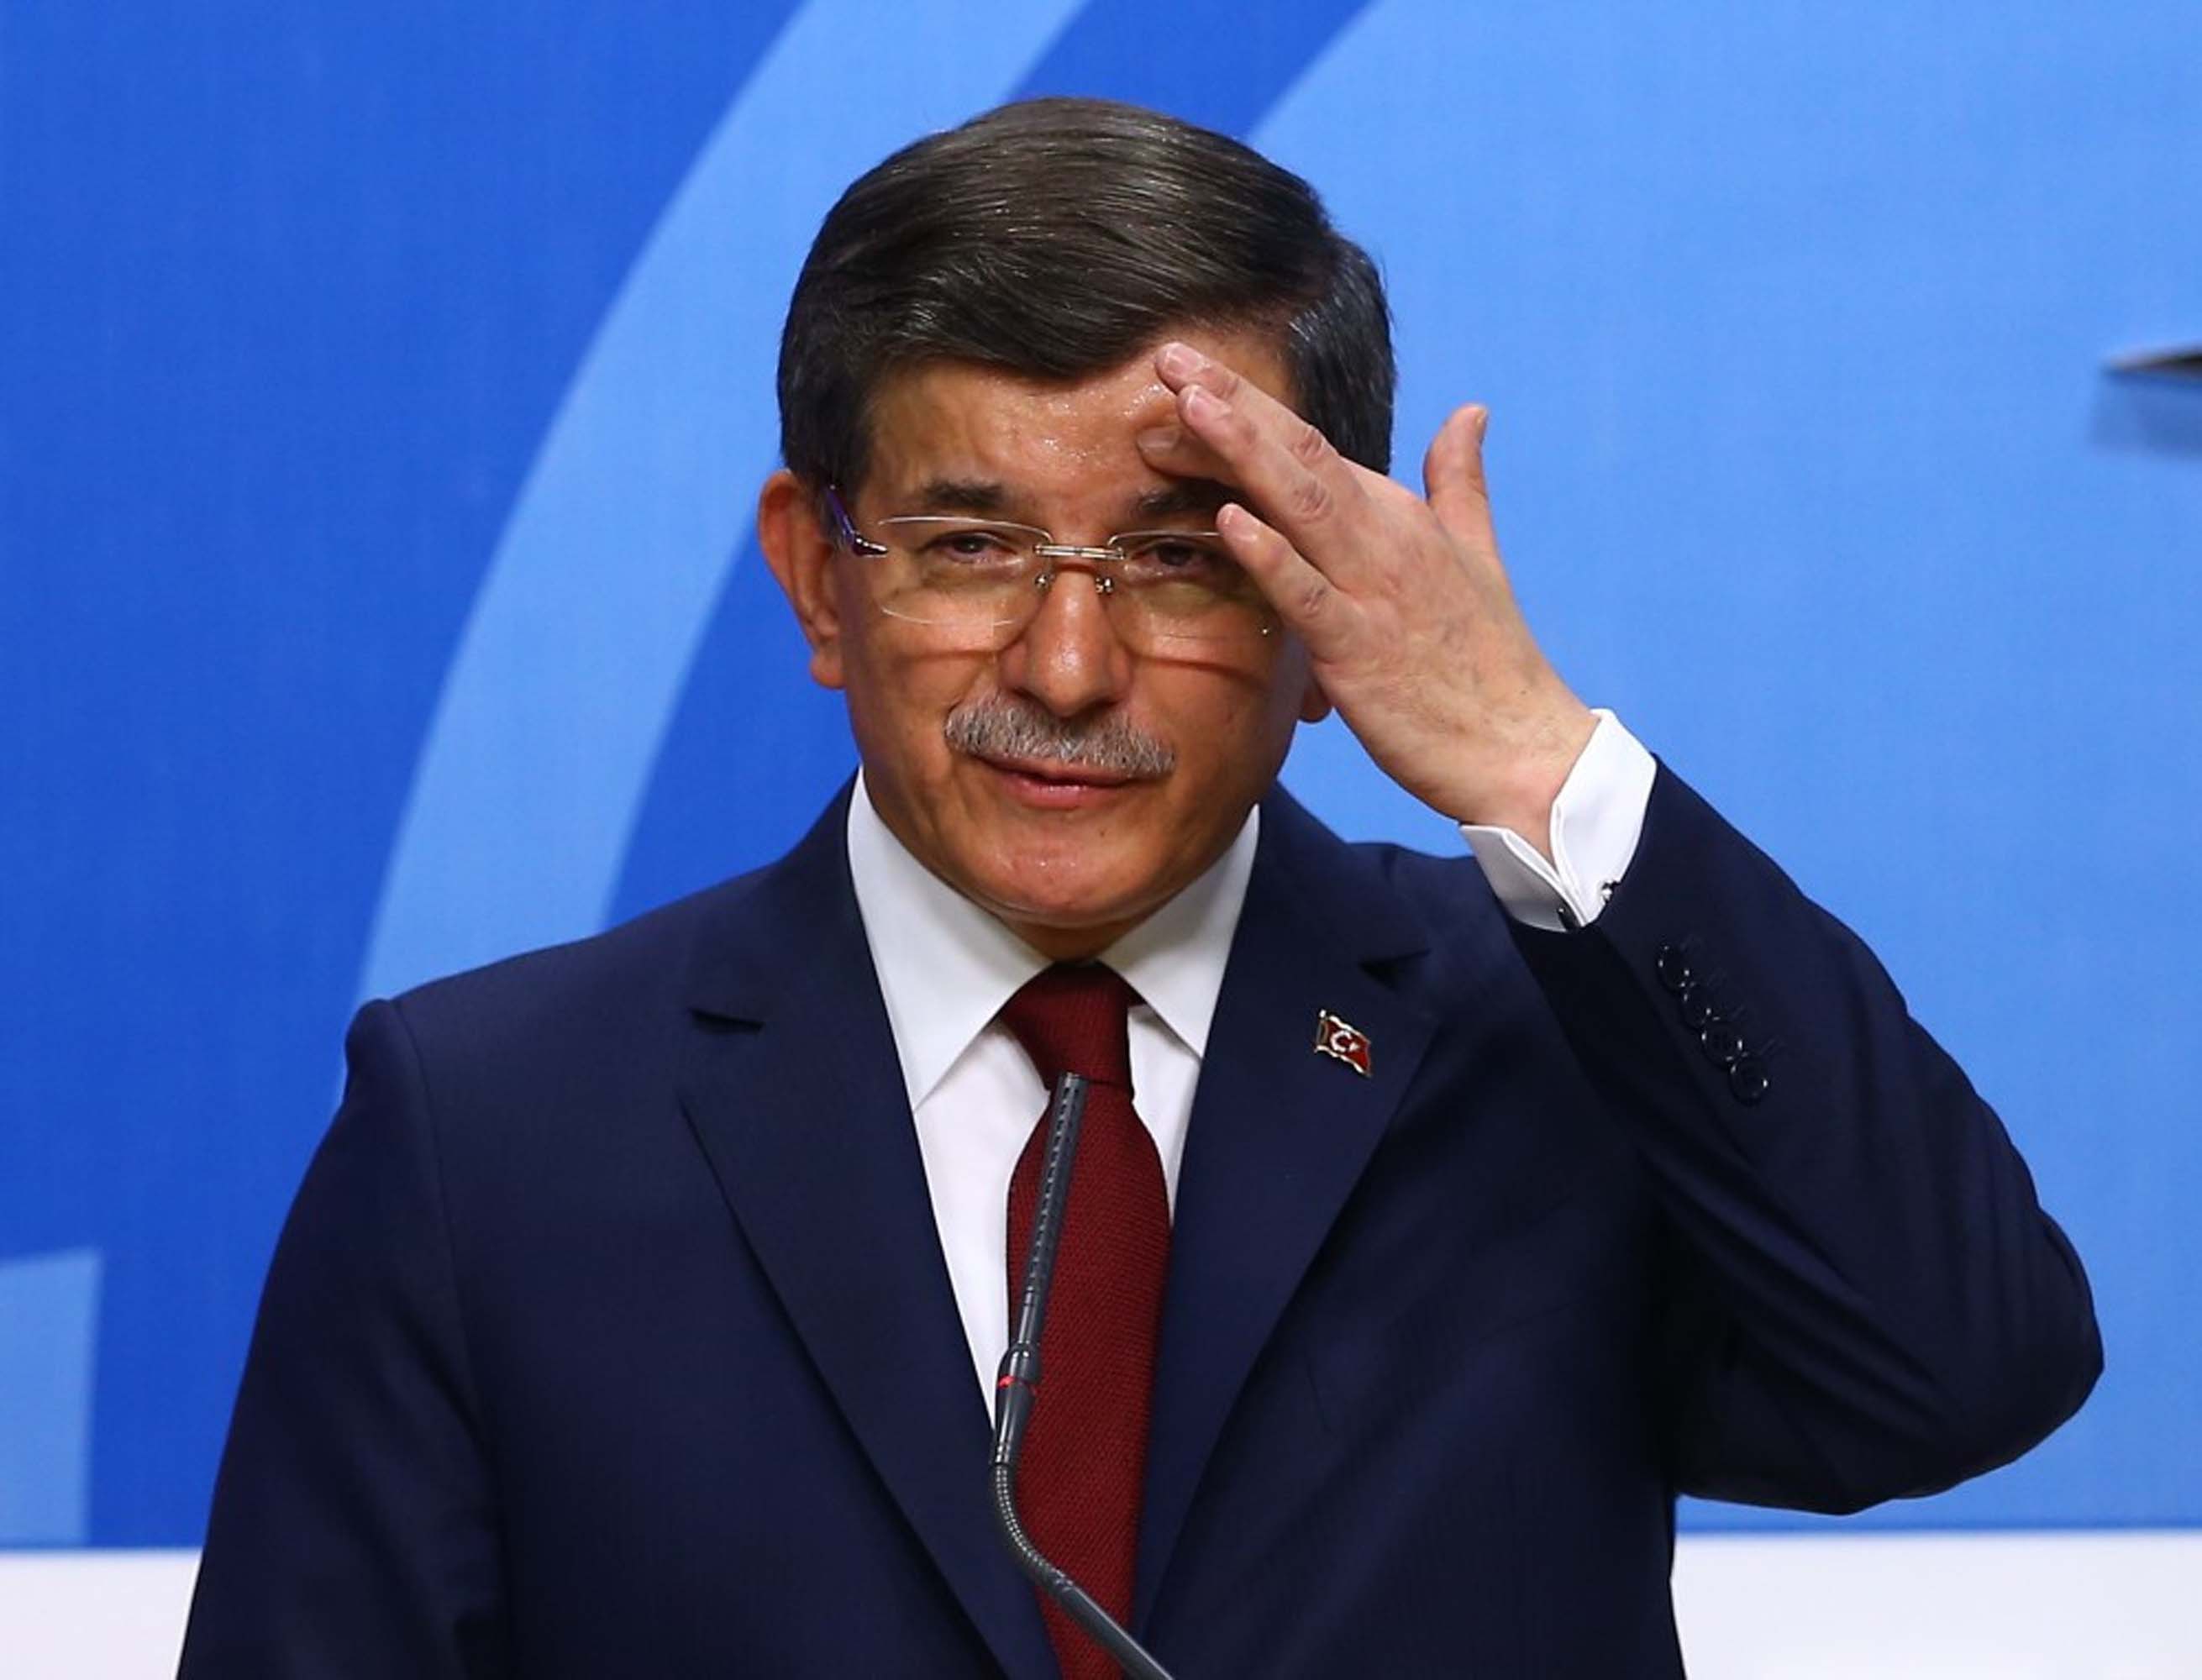 Bir selam versem Anadolu ayağa kalkar diyen Ahmet Davutoğlu'nu, Adana'da kovulmaktan beter ettiler! Sen vatan hainisin!